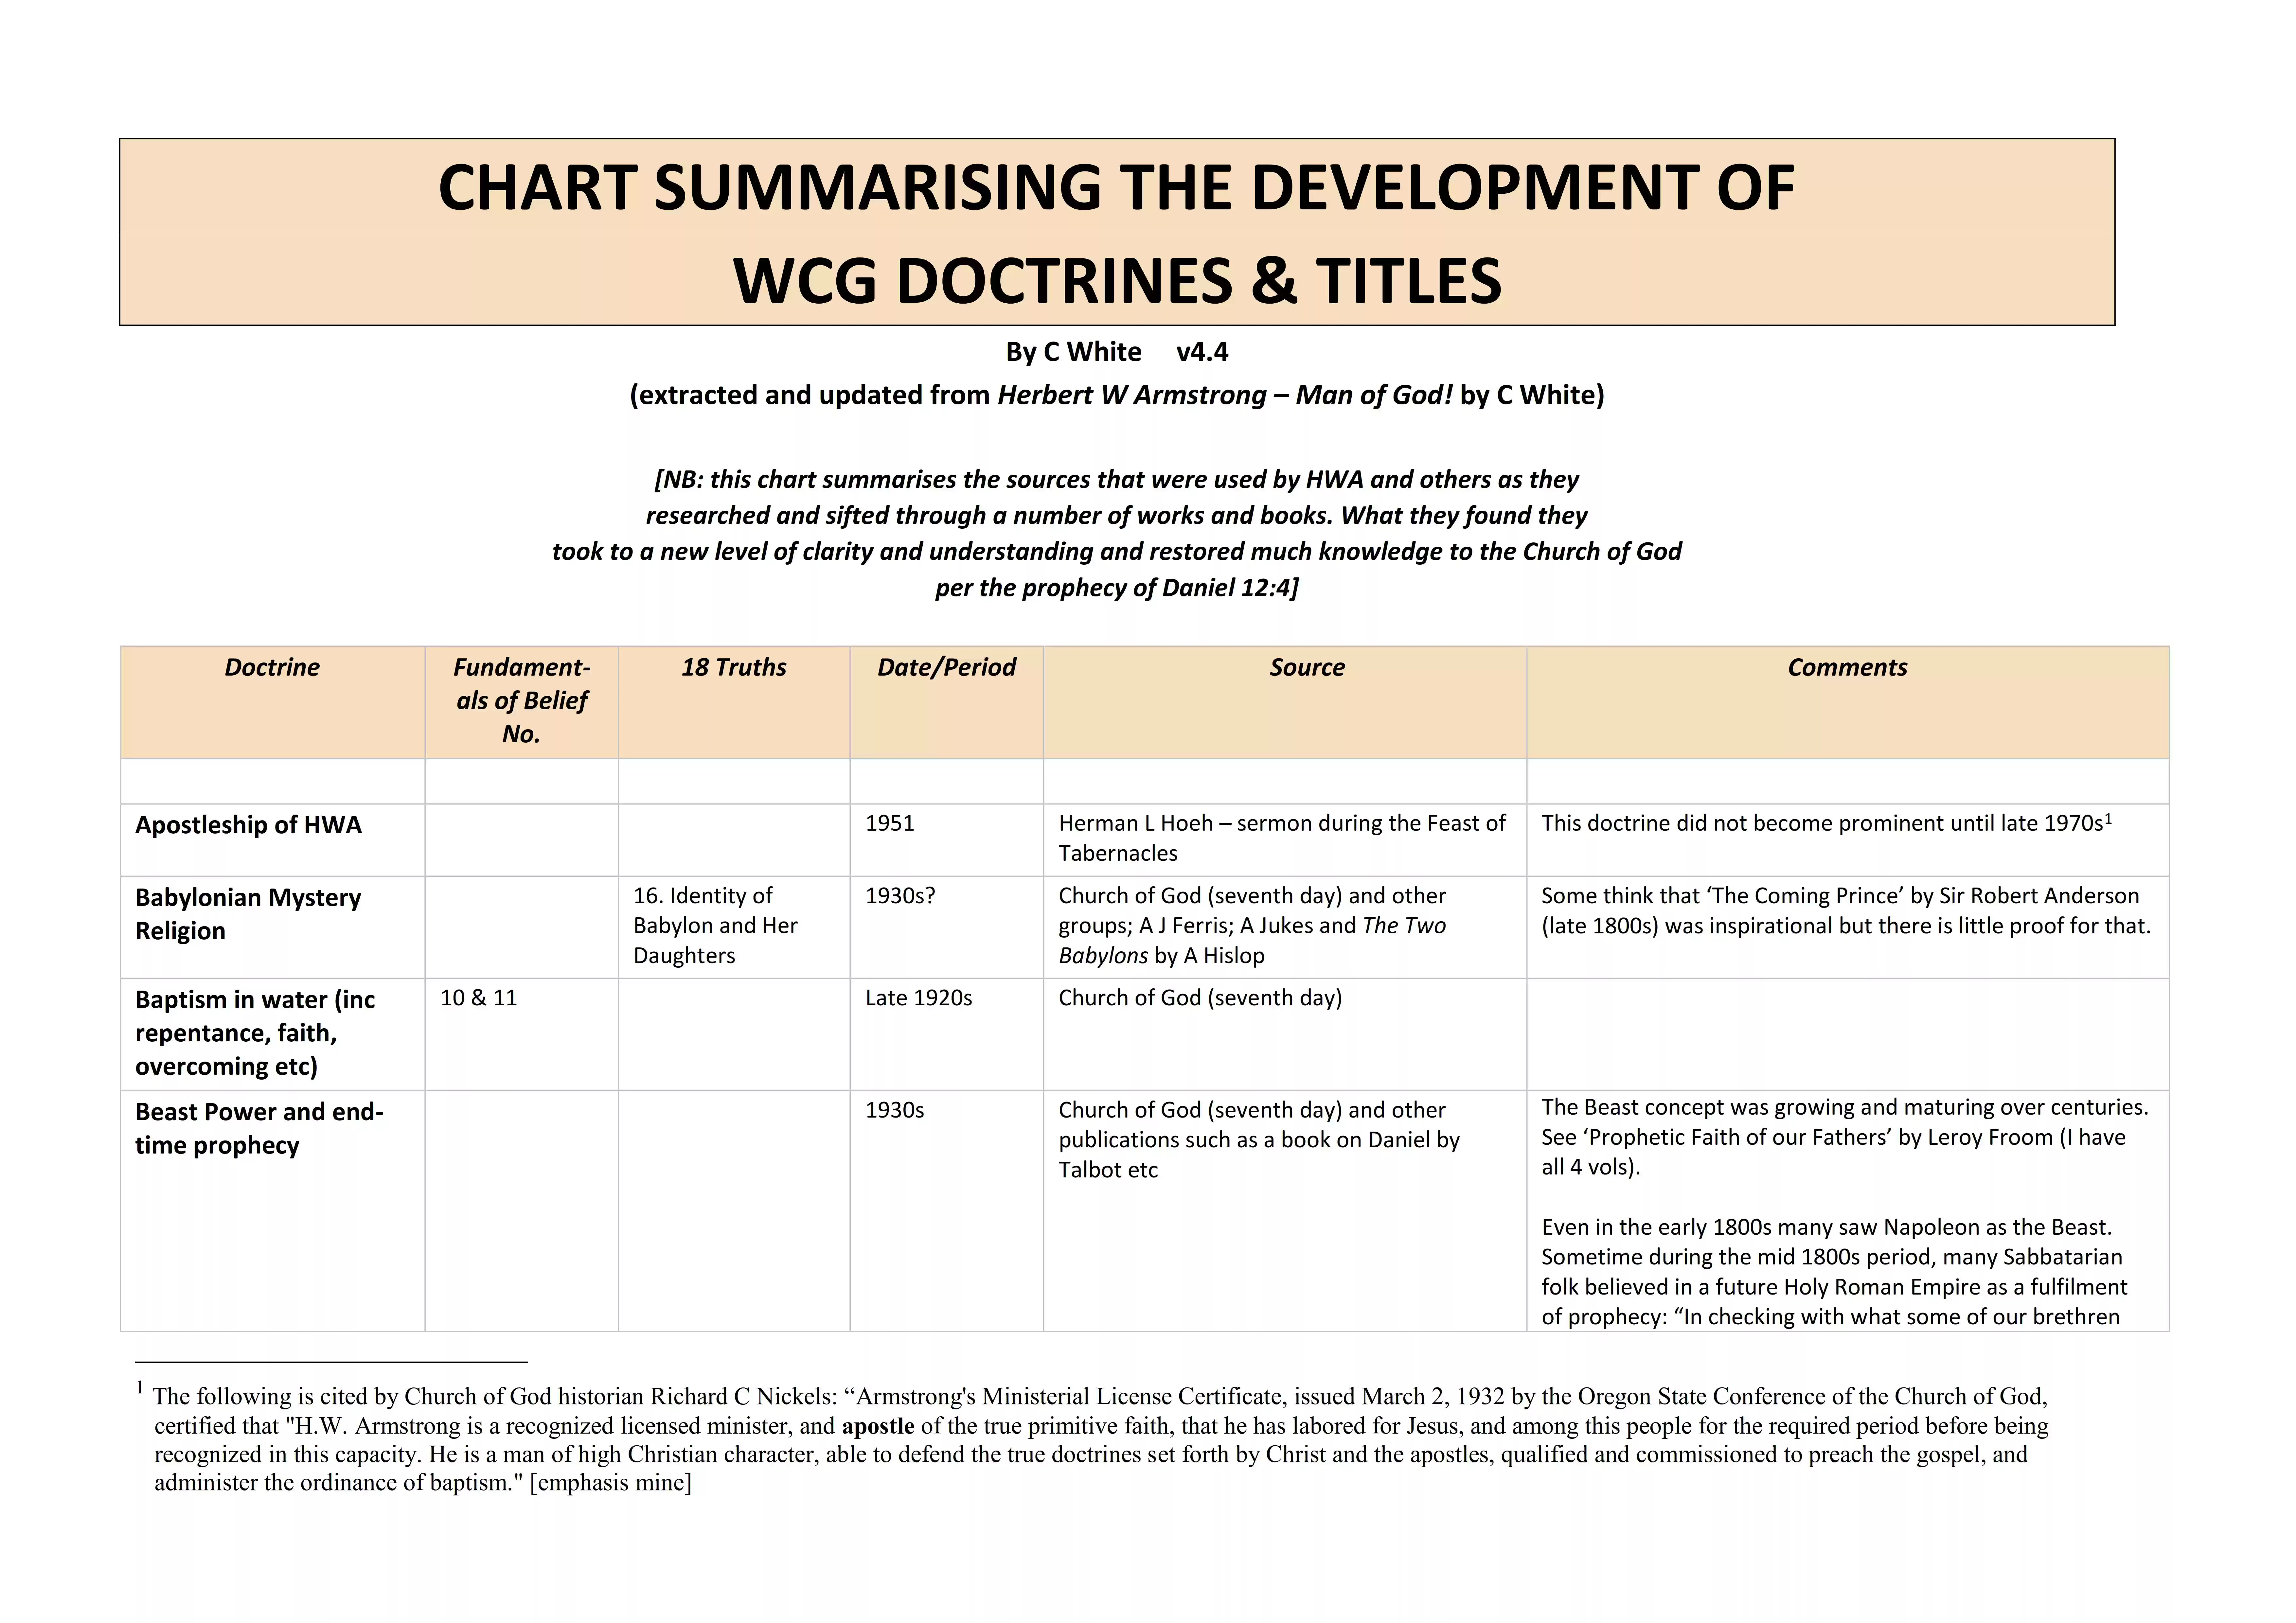 Development of WCG Doctrines